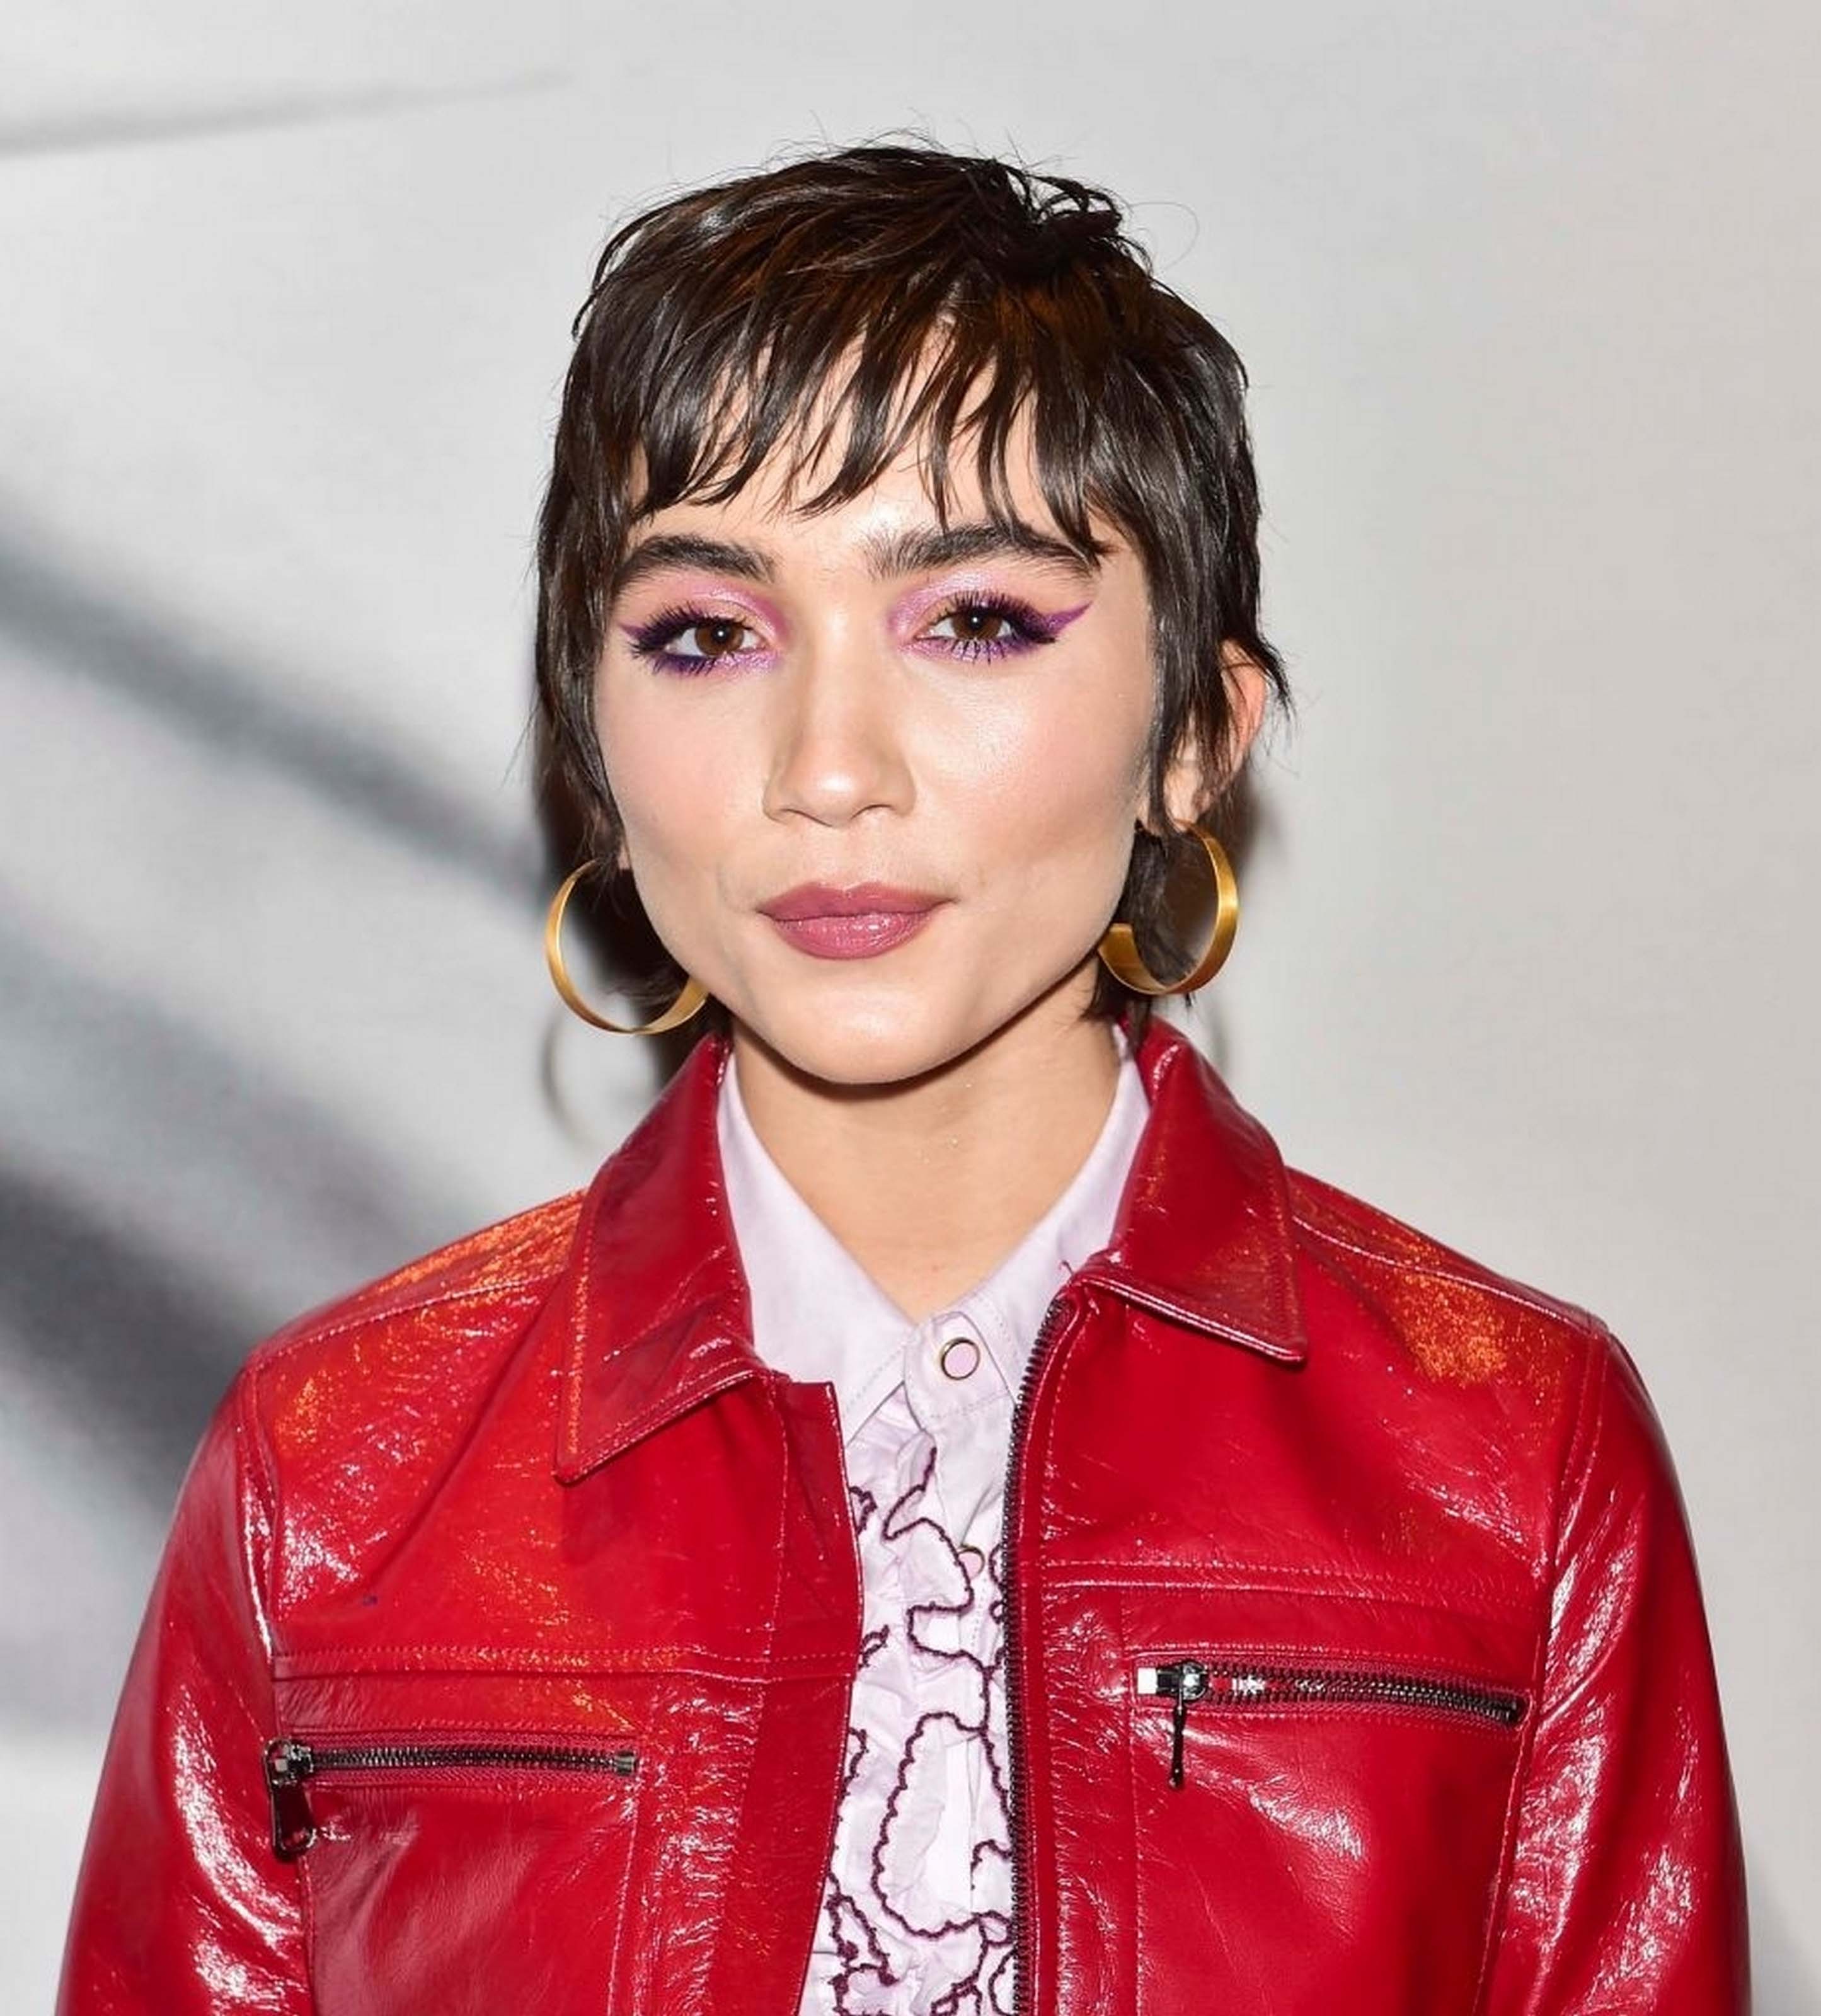 Rowan Blanchard attends Shiseido makeup launch